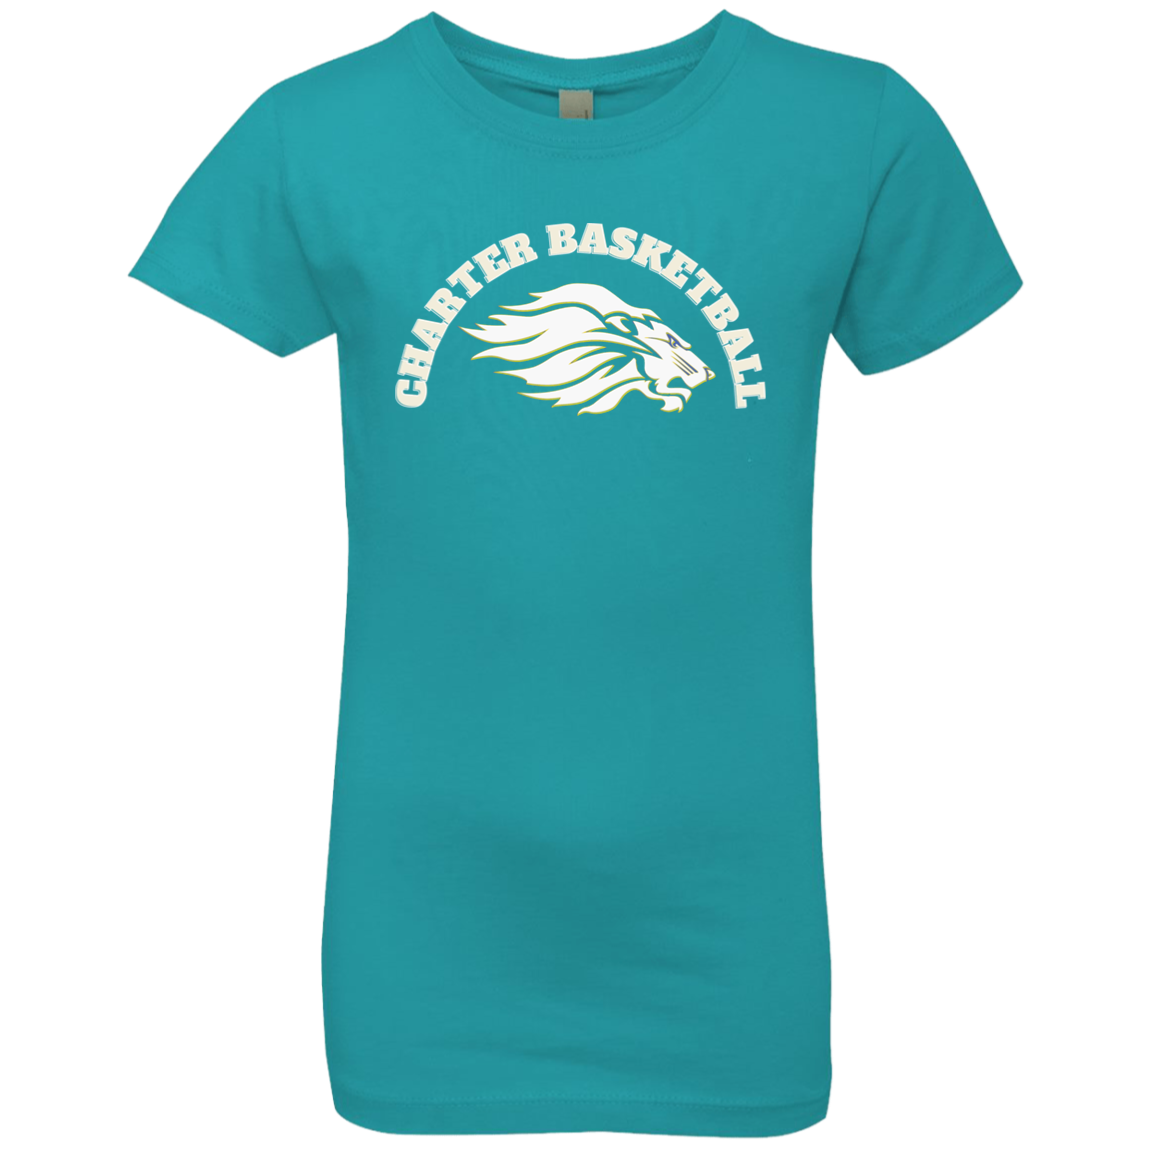 Charter Basketball Girls' Princess T-Shirt